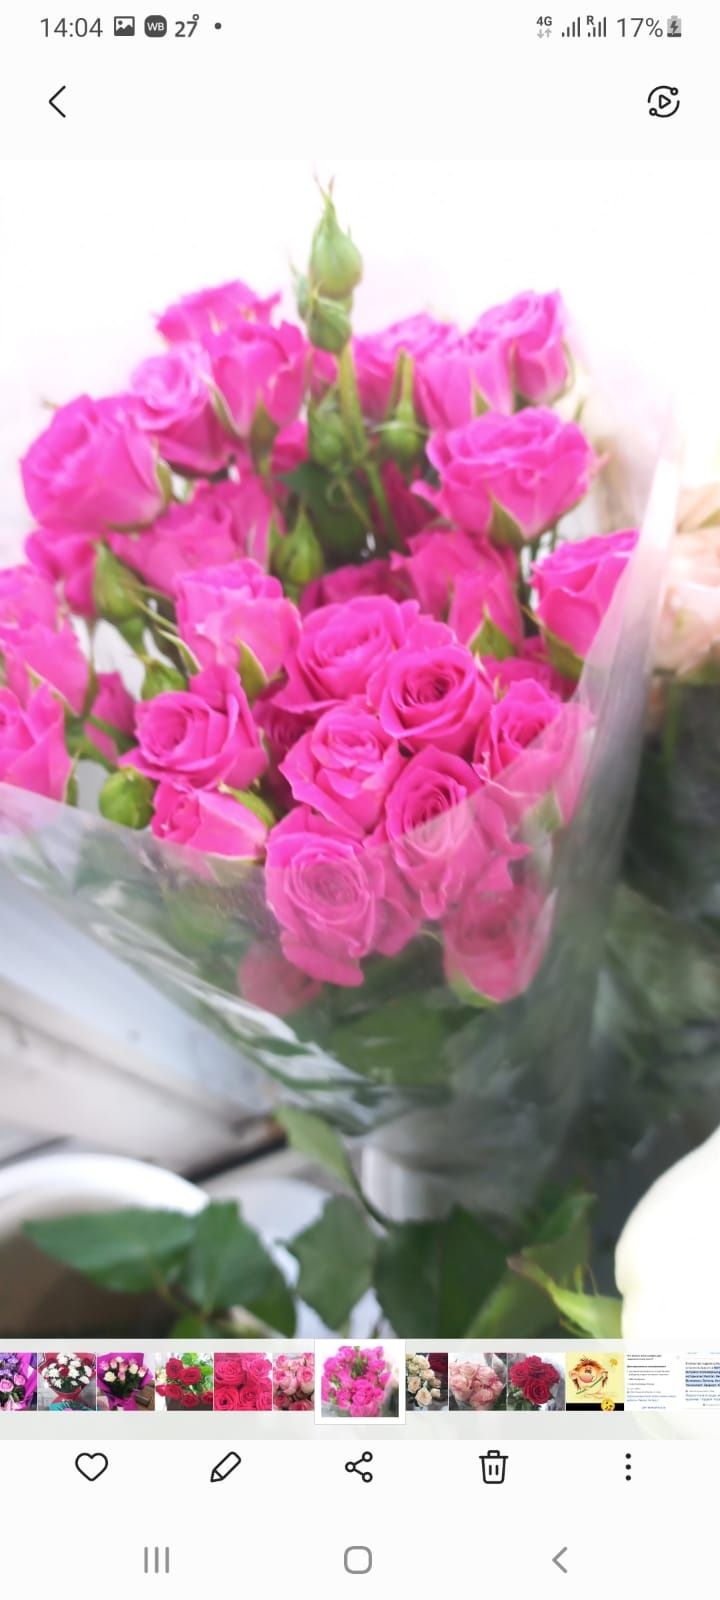 Продажа свежих цветов доставка бесплатно.